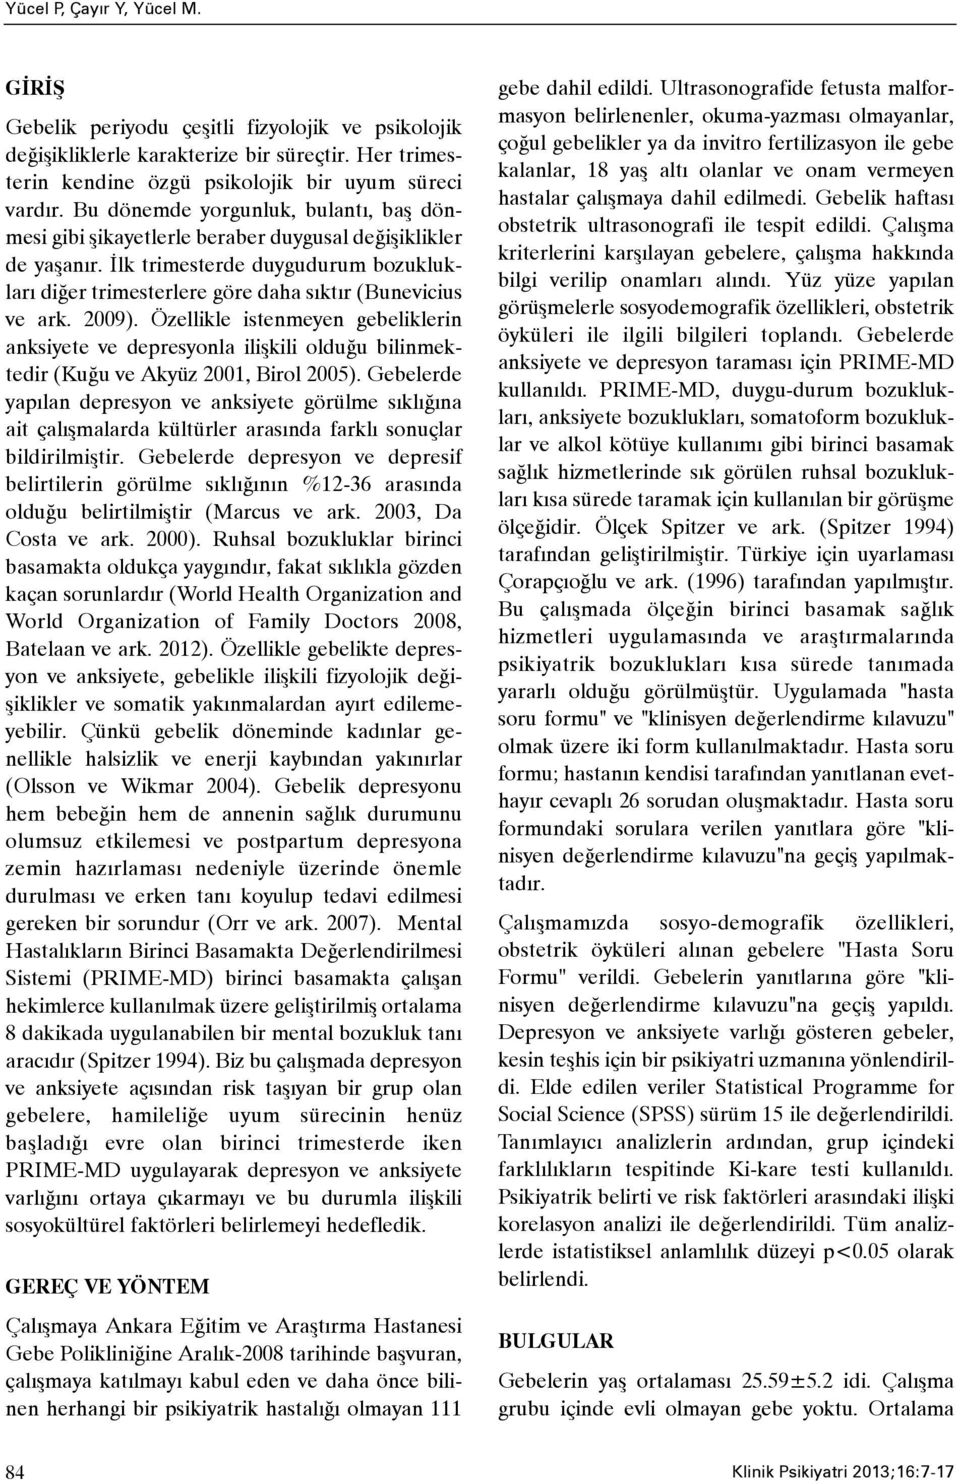 2009). Özellikle istenmeyen gebeliklerin anksiyete ve depresyonla iliþkili olduðu bilinmektedir (Kuðu ve Akyüz 2001, Birol 2005).